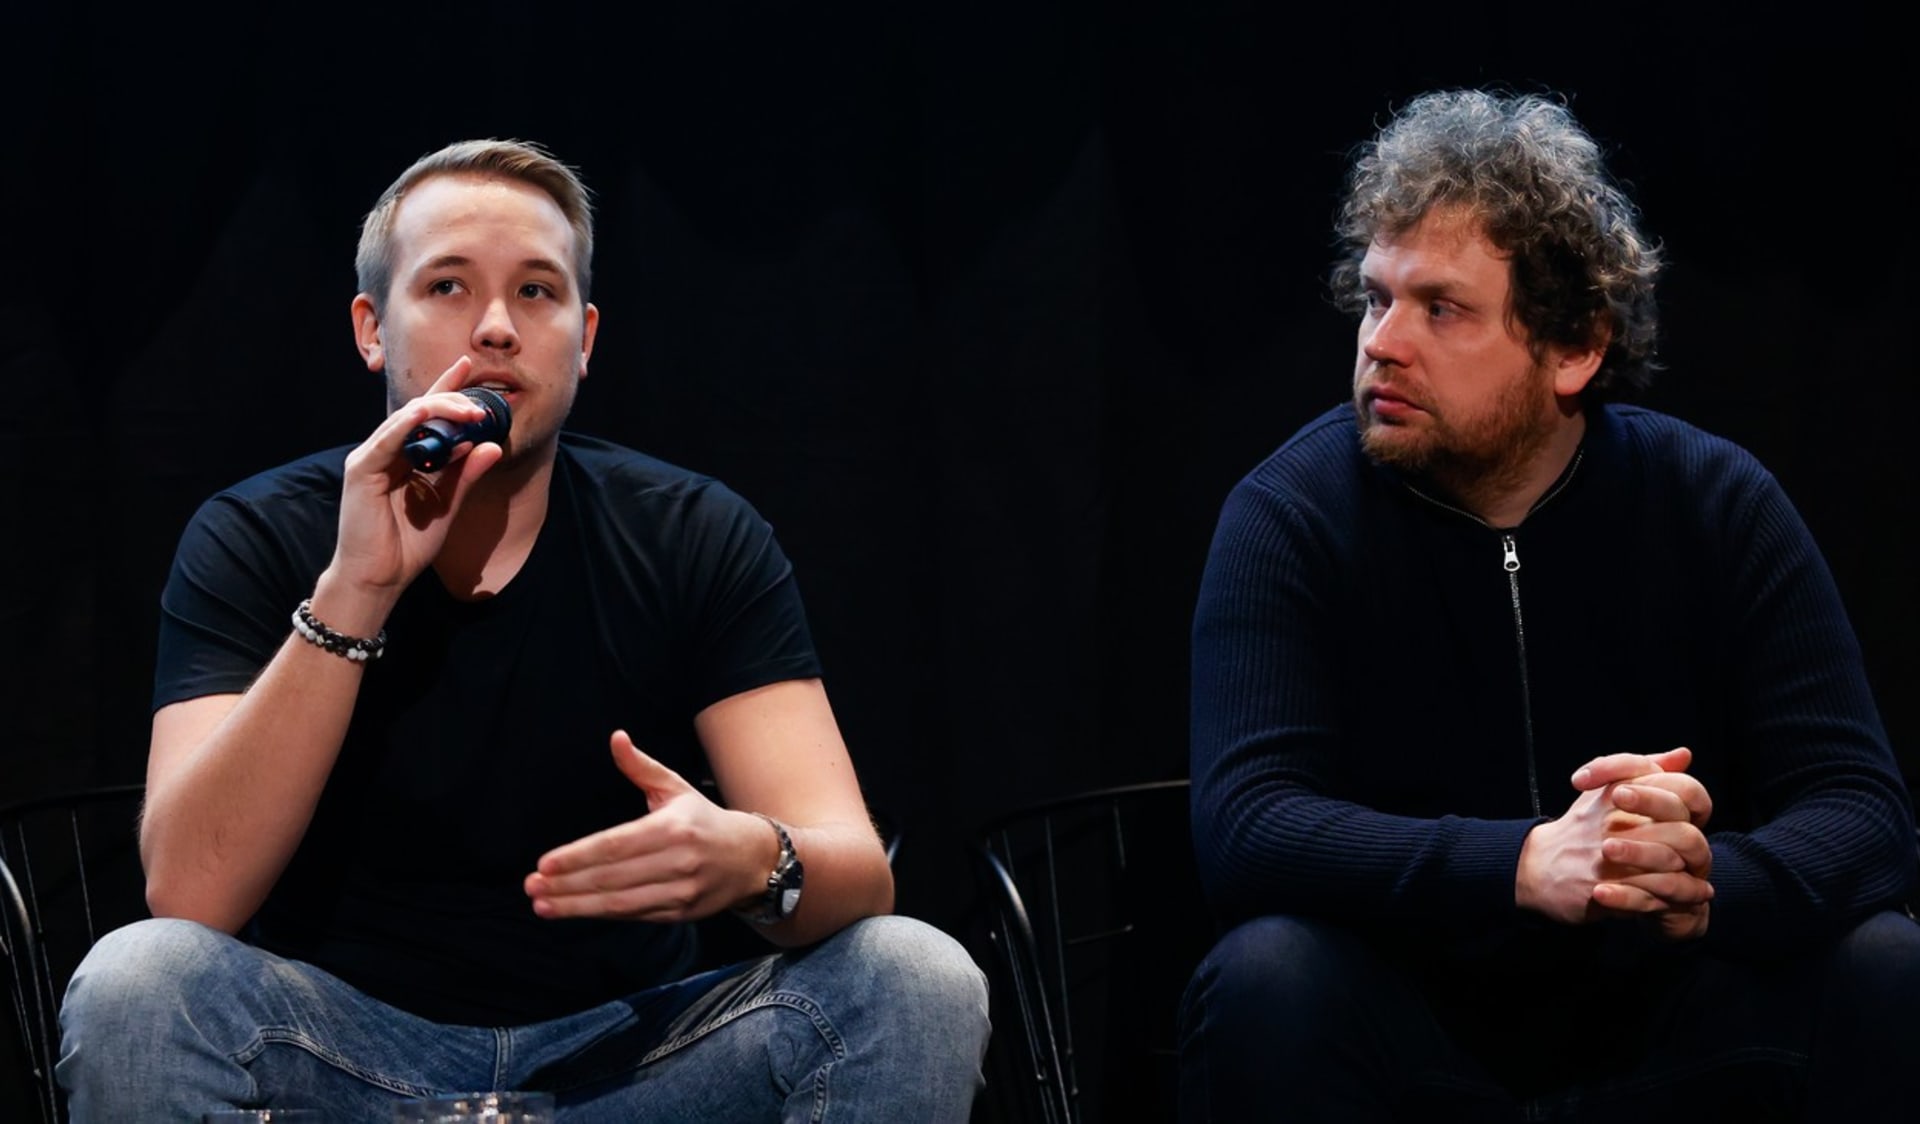 Jirka Král a dokumentarista Vít Klusák vystoupili na tiskové konferenci po projekci filmu V síti k osvětové kampani k bezpečnému chování na internetu.